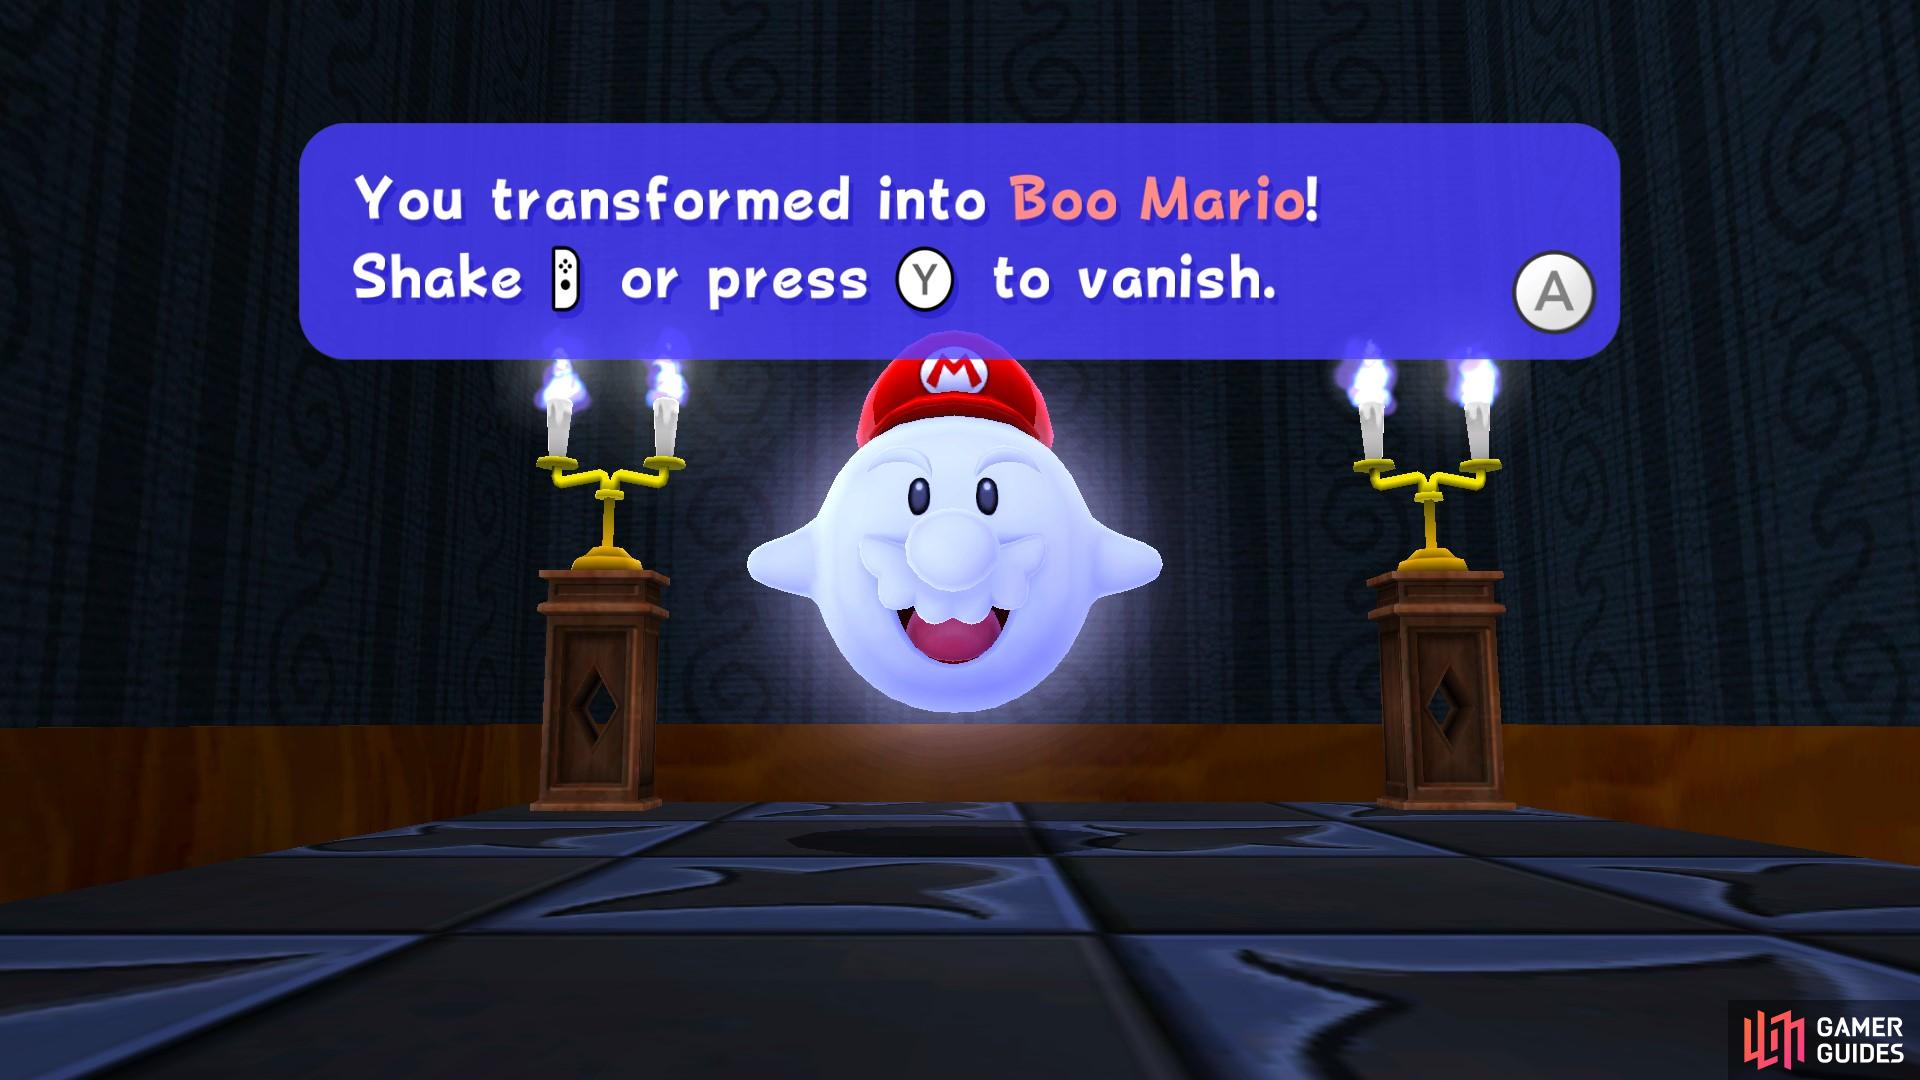 Boo Mario can go invisible!